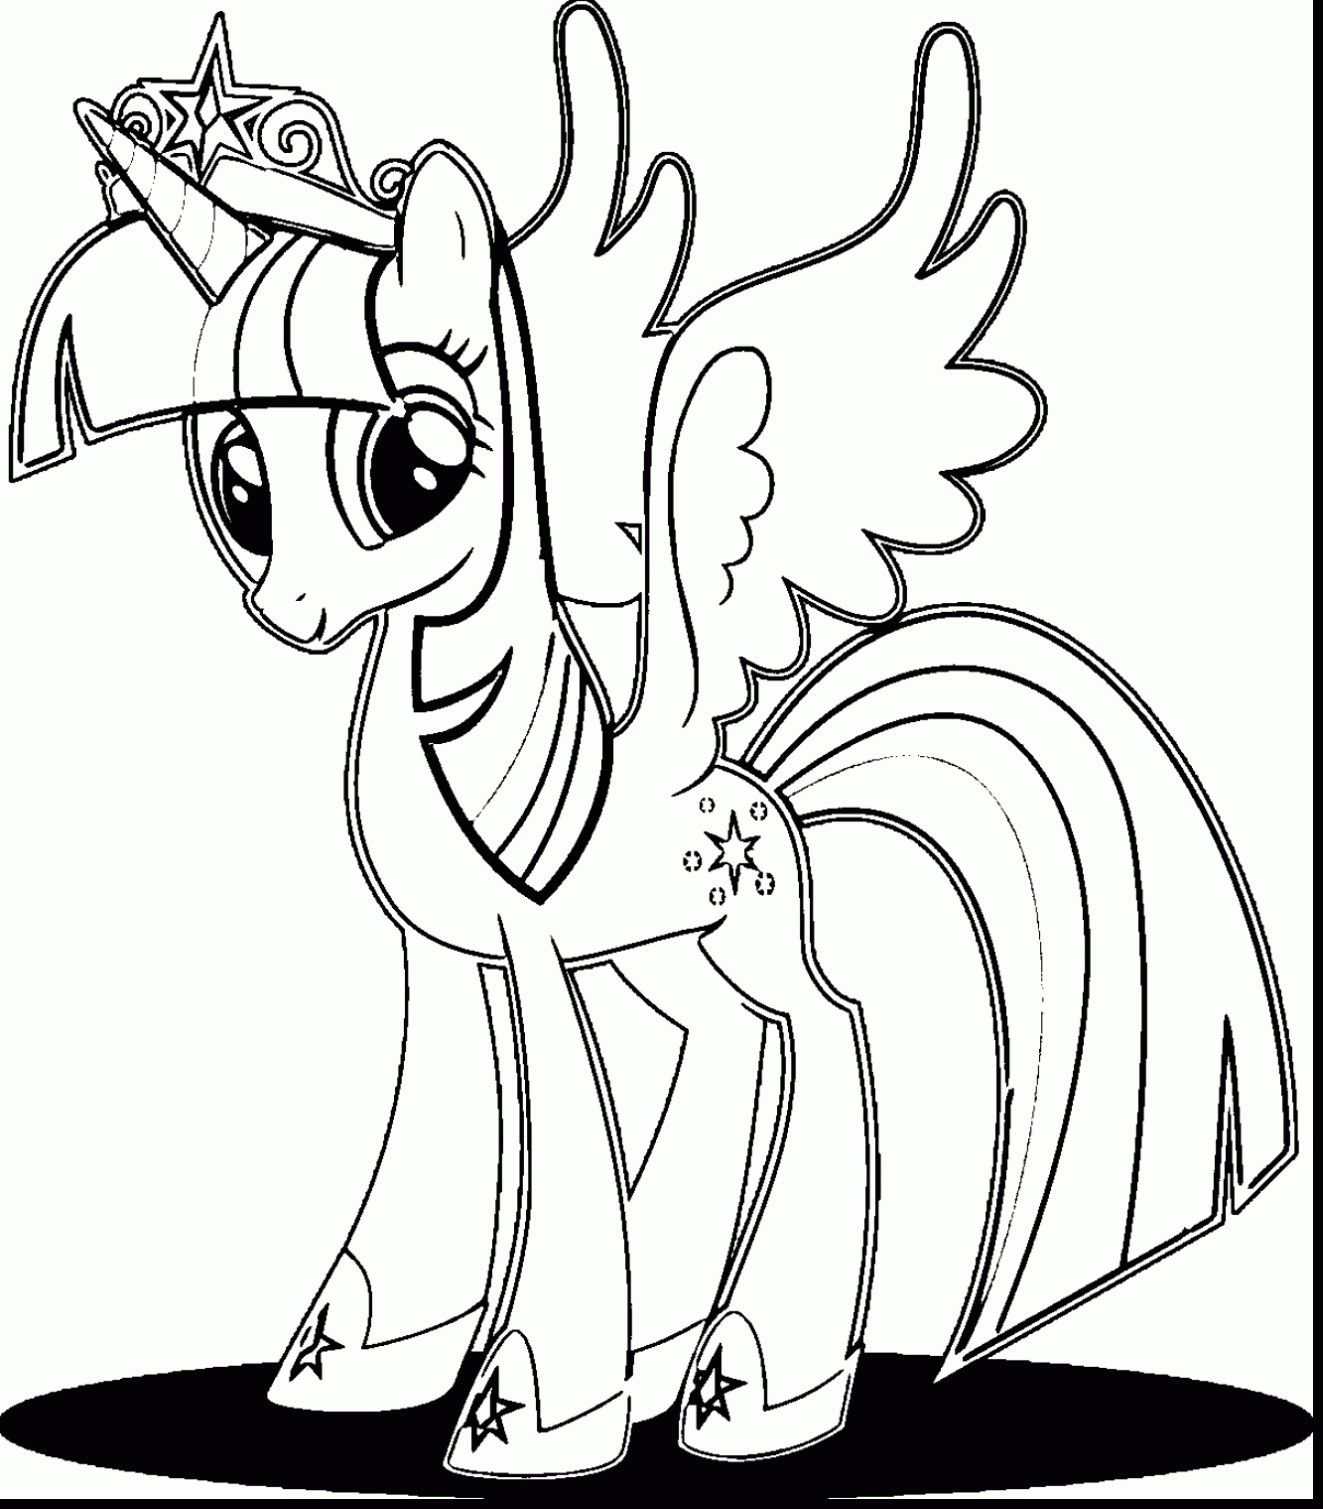 My little pony рисунки. Раскраски пони принцесатвайлай. Раскраска принцесса Твайлайт. Раскраски пони Твайлайт Спаркл принцесса. Принцесса Твайлайт Спаркл раскраска.